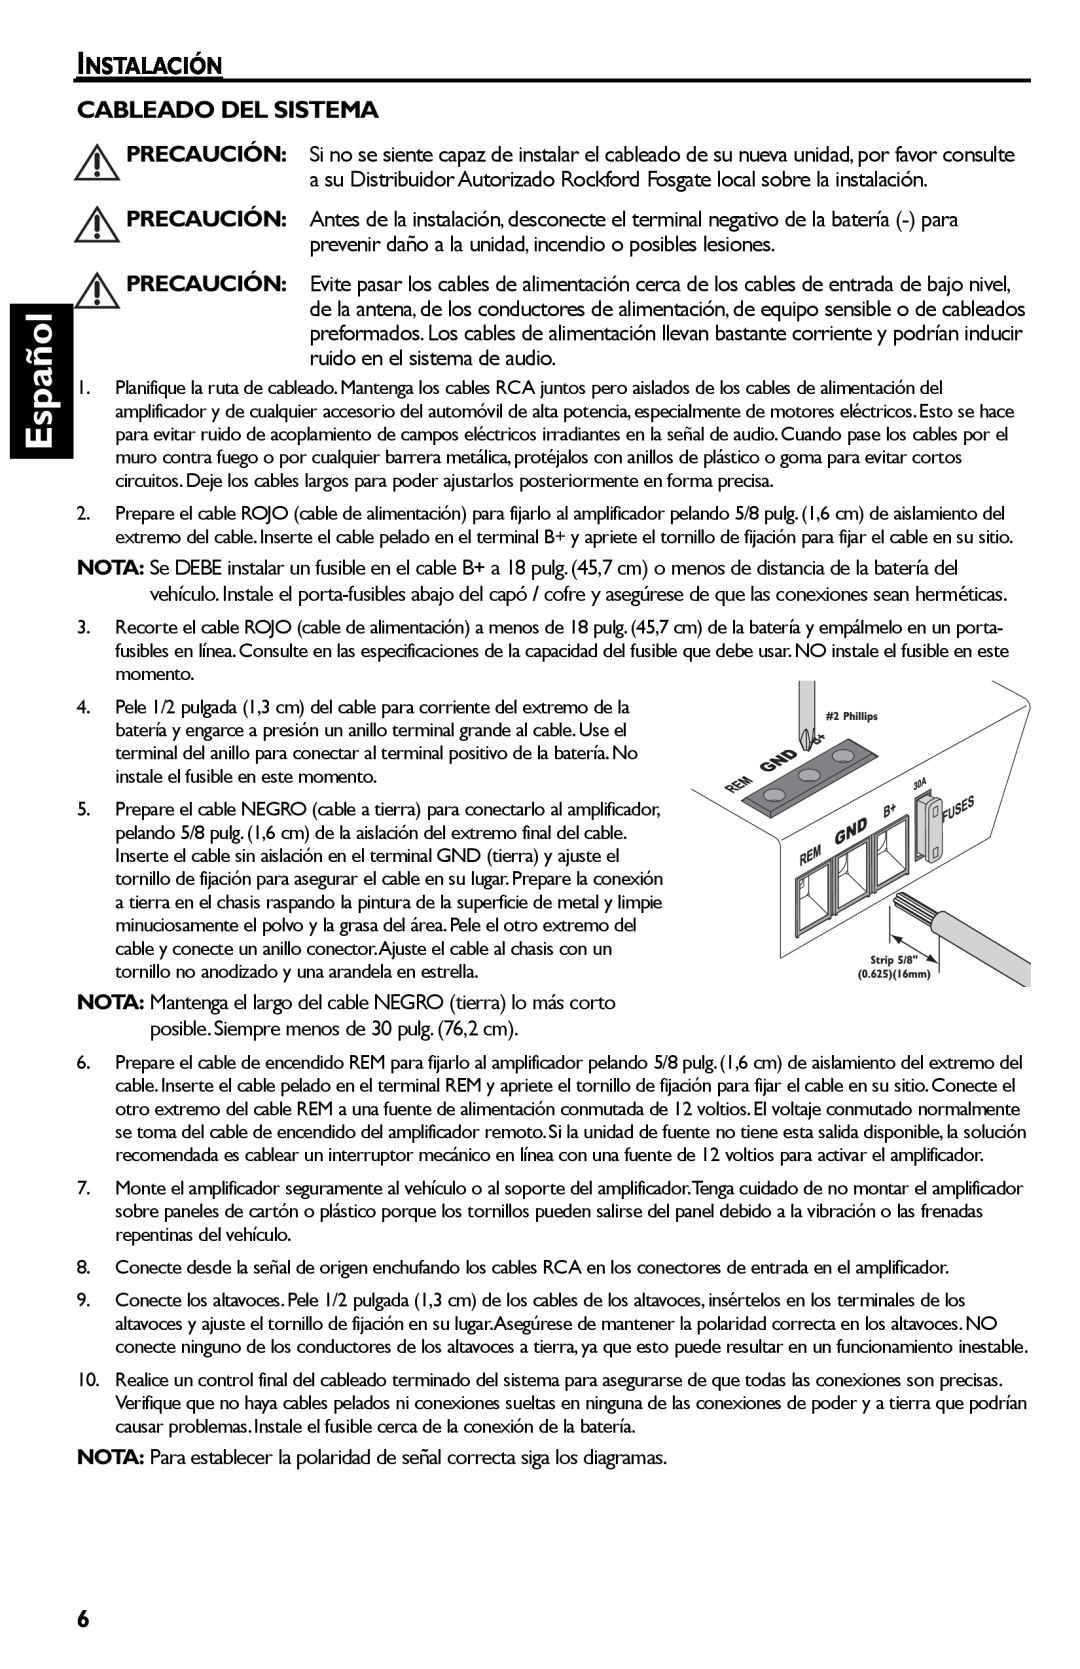 Rockford Fosgate Punch 45 manual Español, Instalación Cableado Del Sistema 